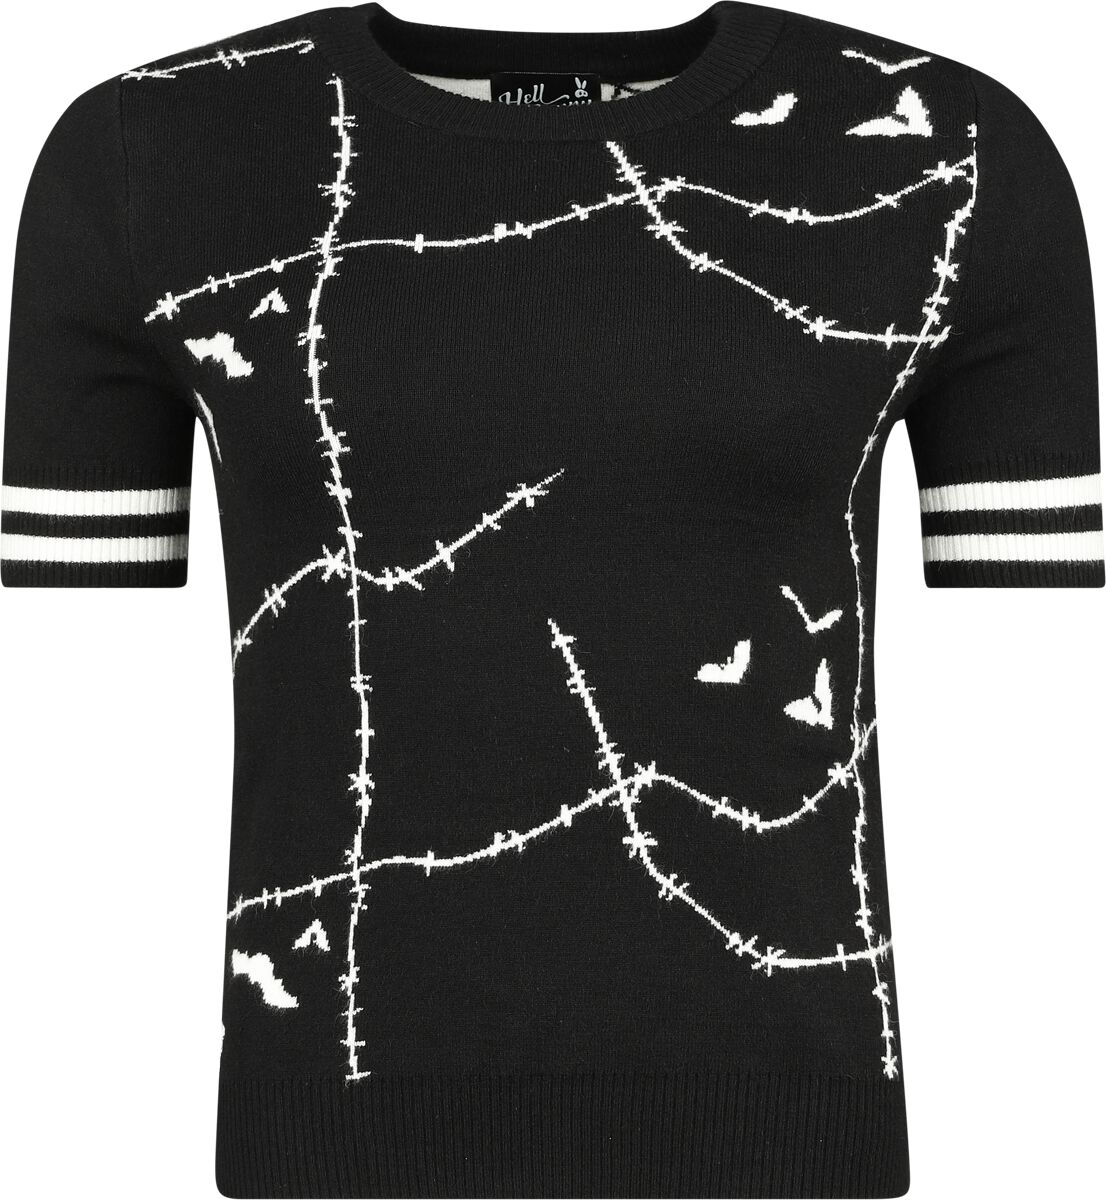 Hell Bunny Stitches Top T-Shirt schwarz weiß in M